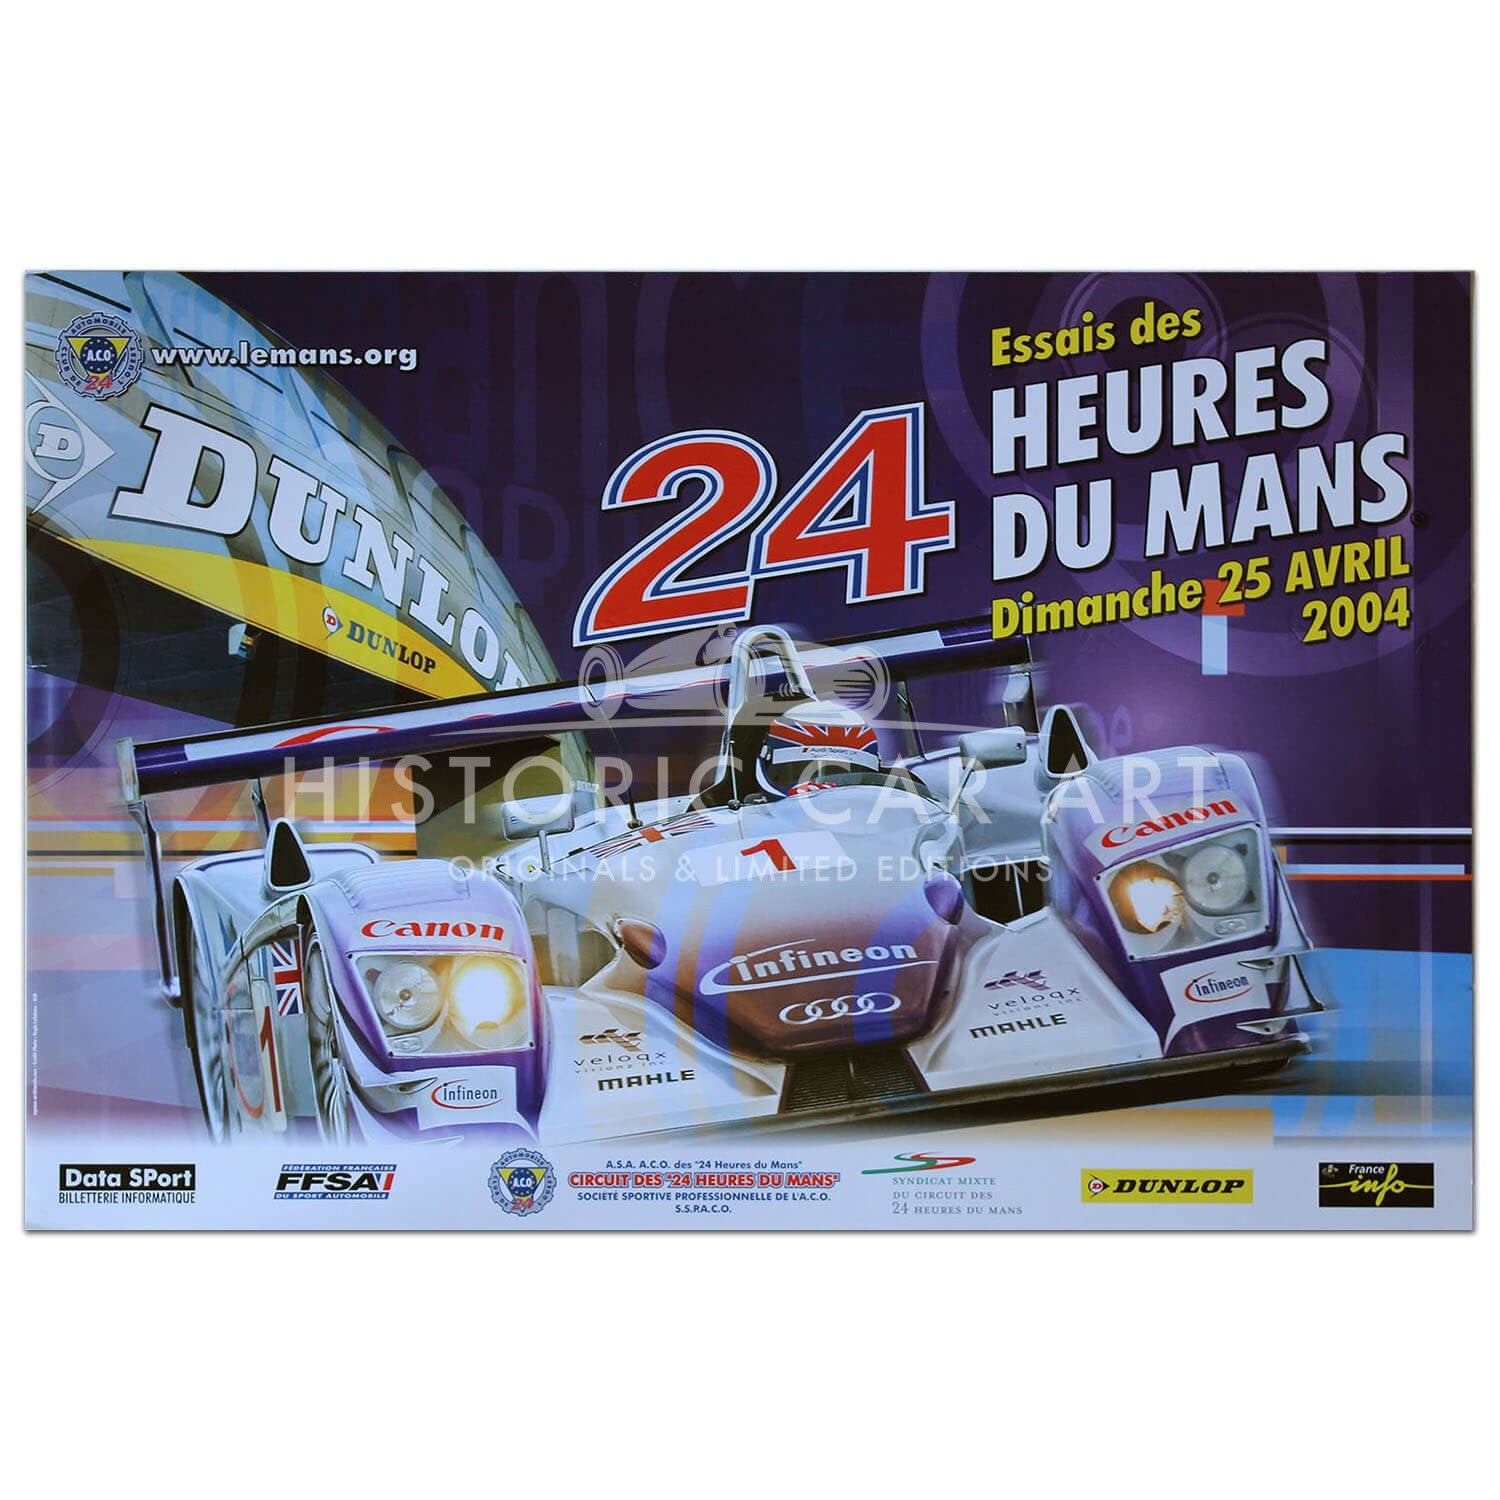 French | Le Mans 24 hours 2004 Essais (Practice) Original Poster